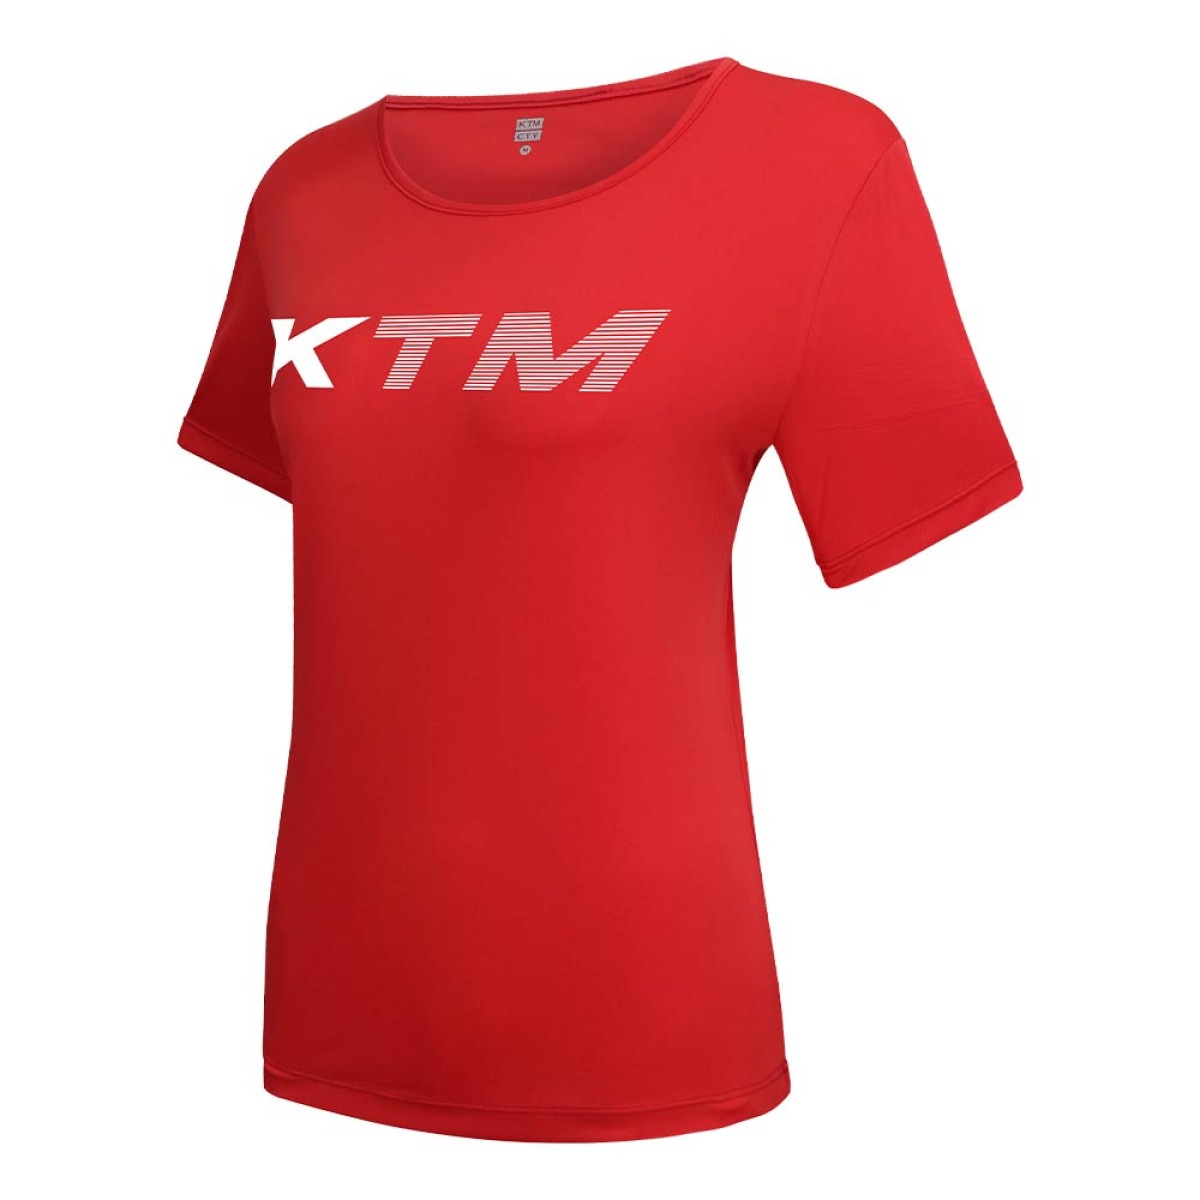 womens-t-shirt-krnt26213-3a